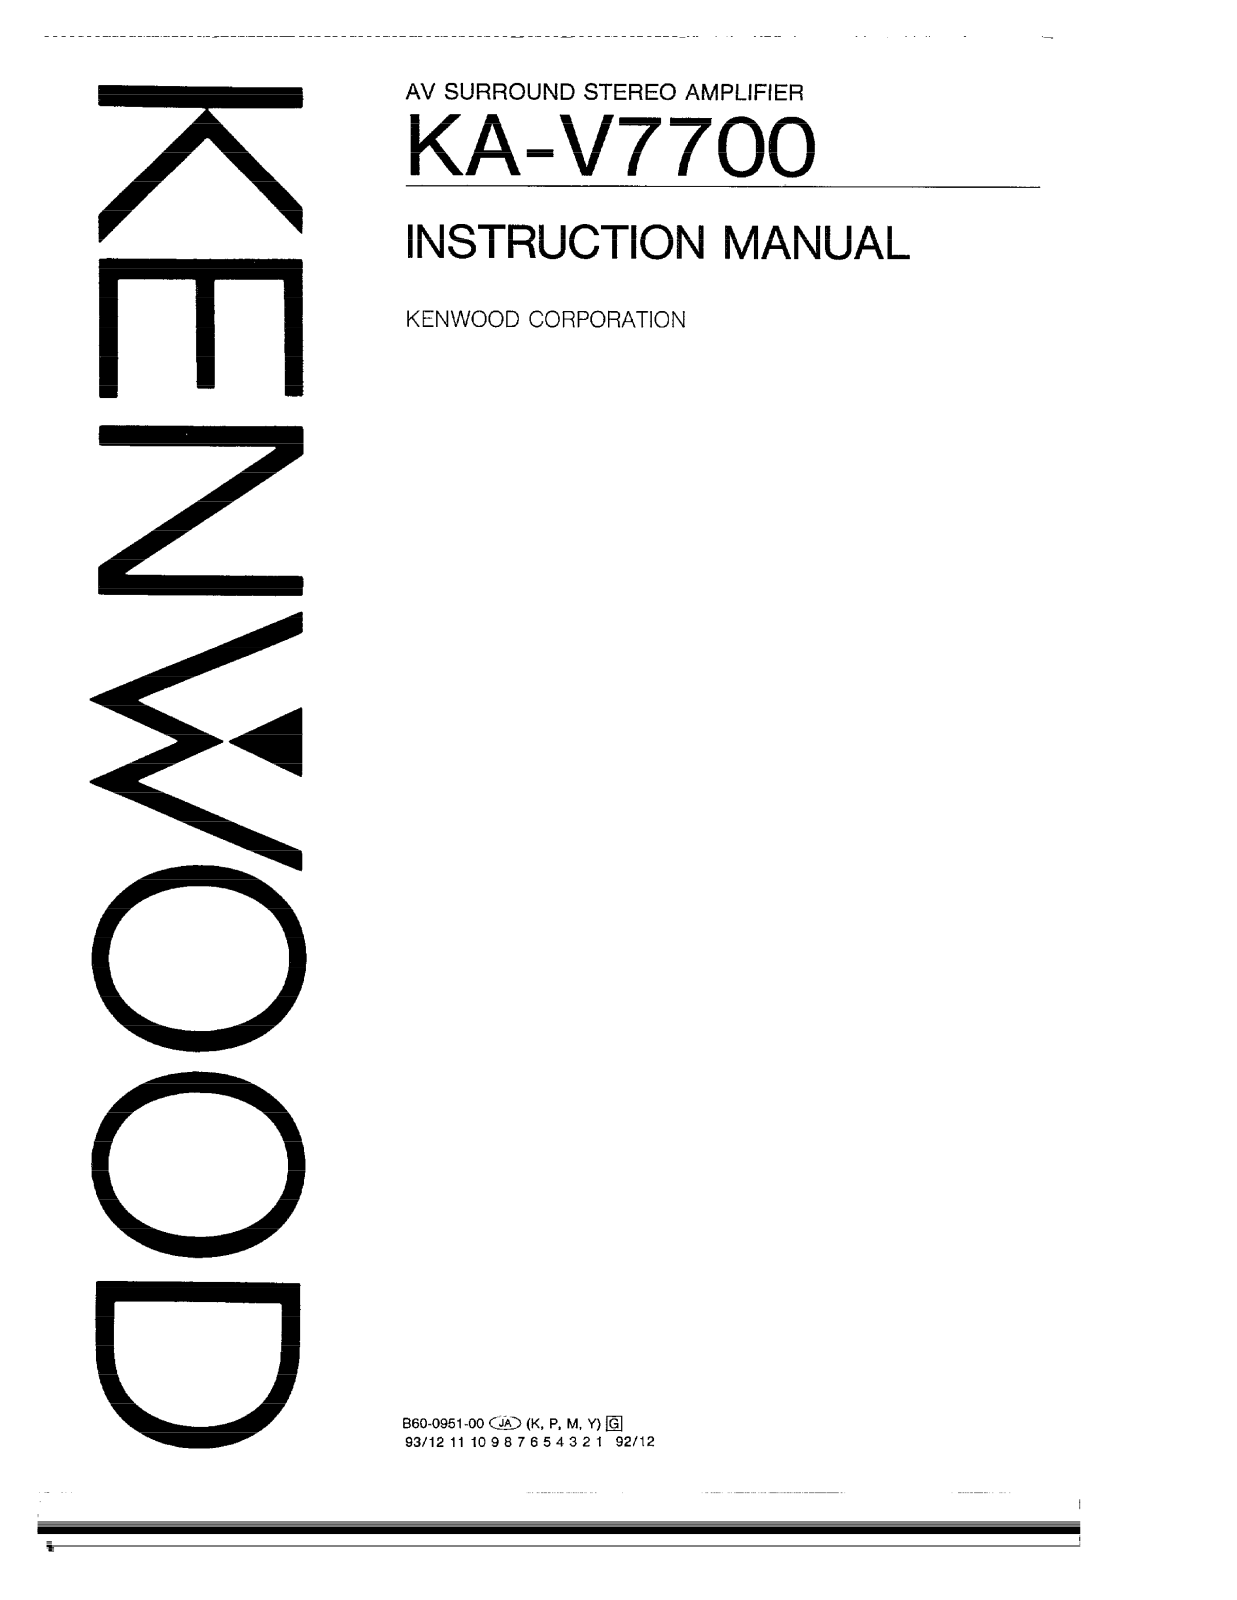 Kenwood KA-V7700 Owner's Manual